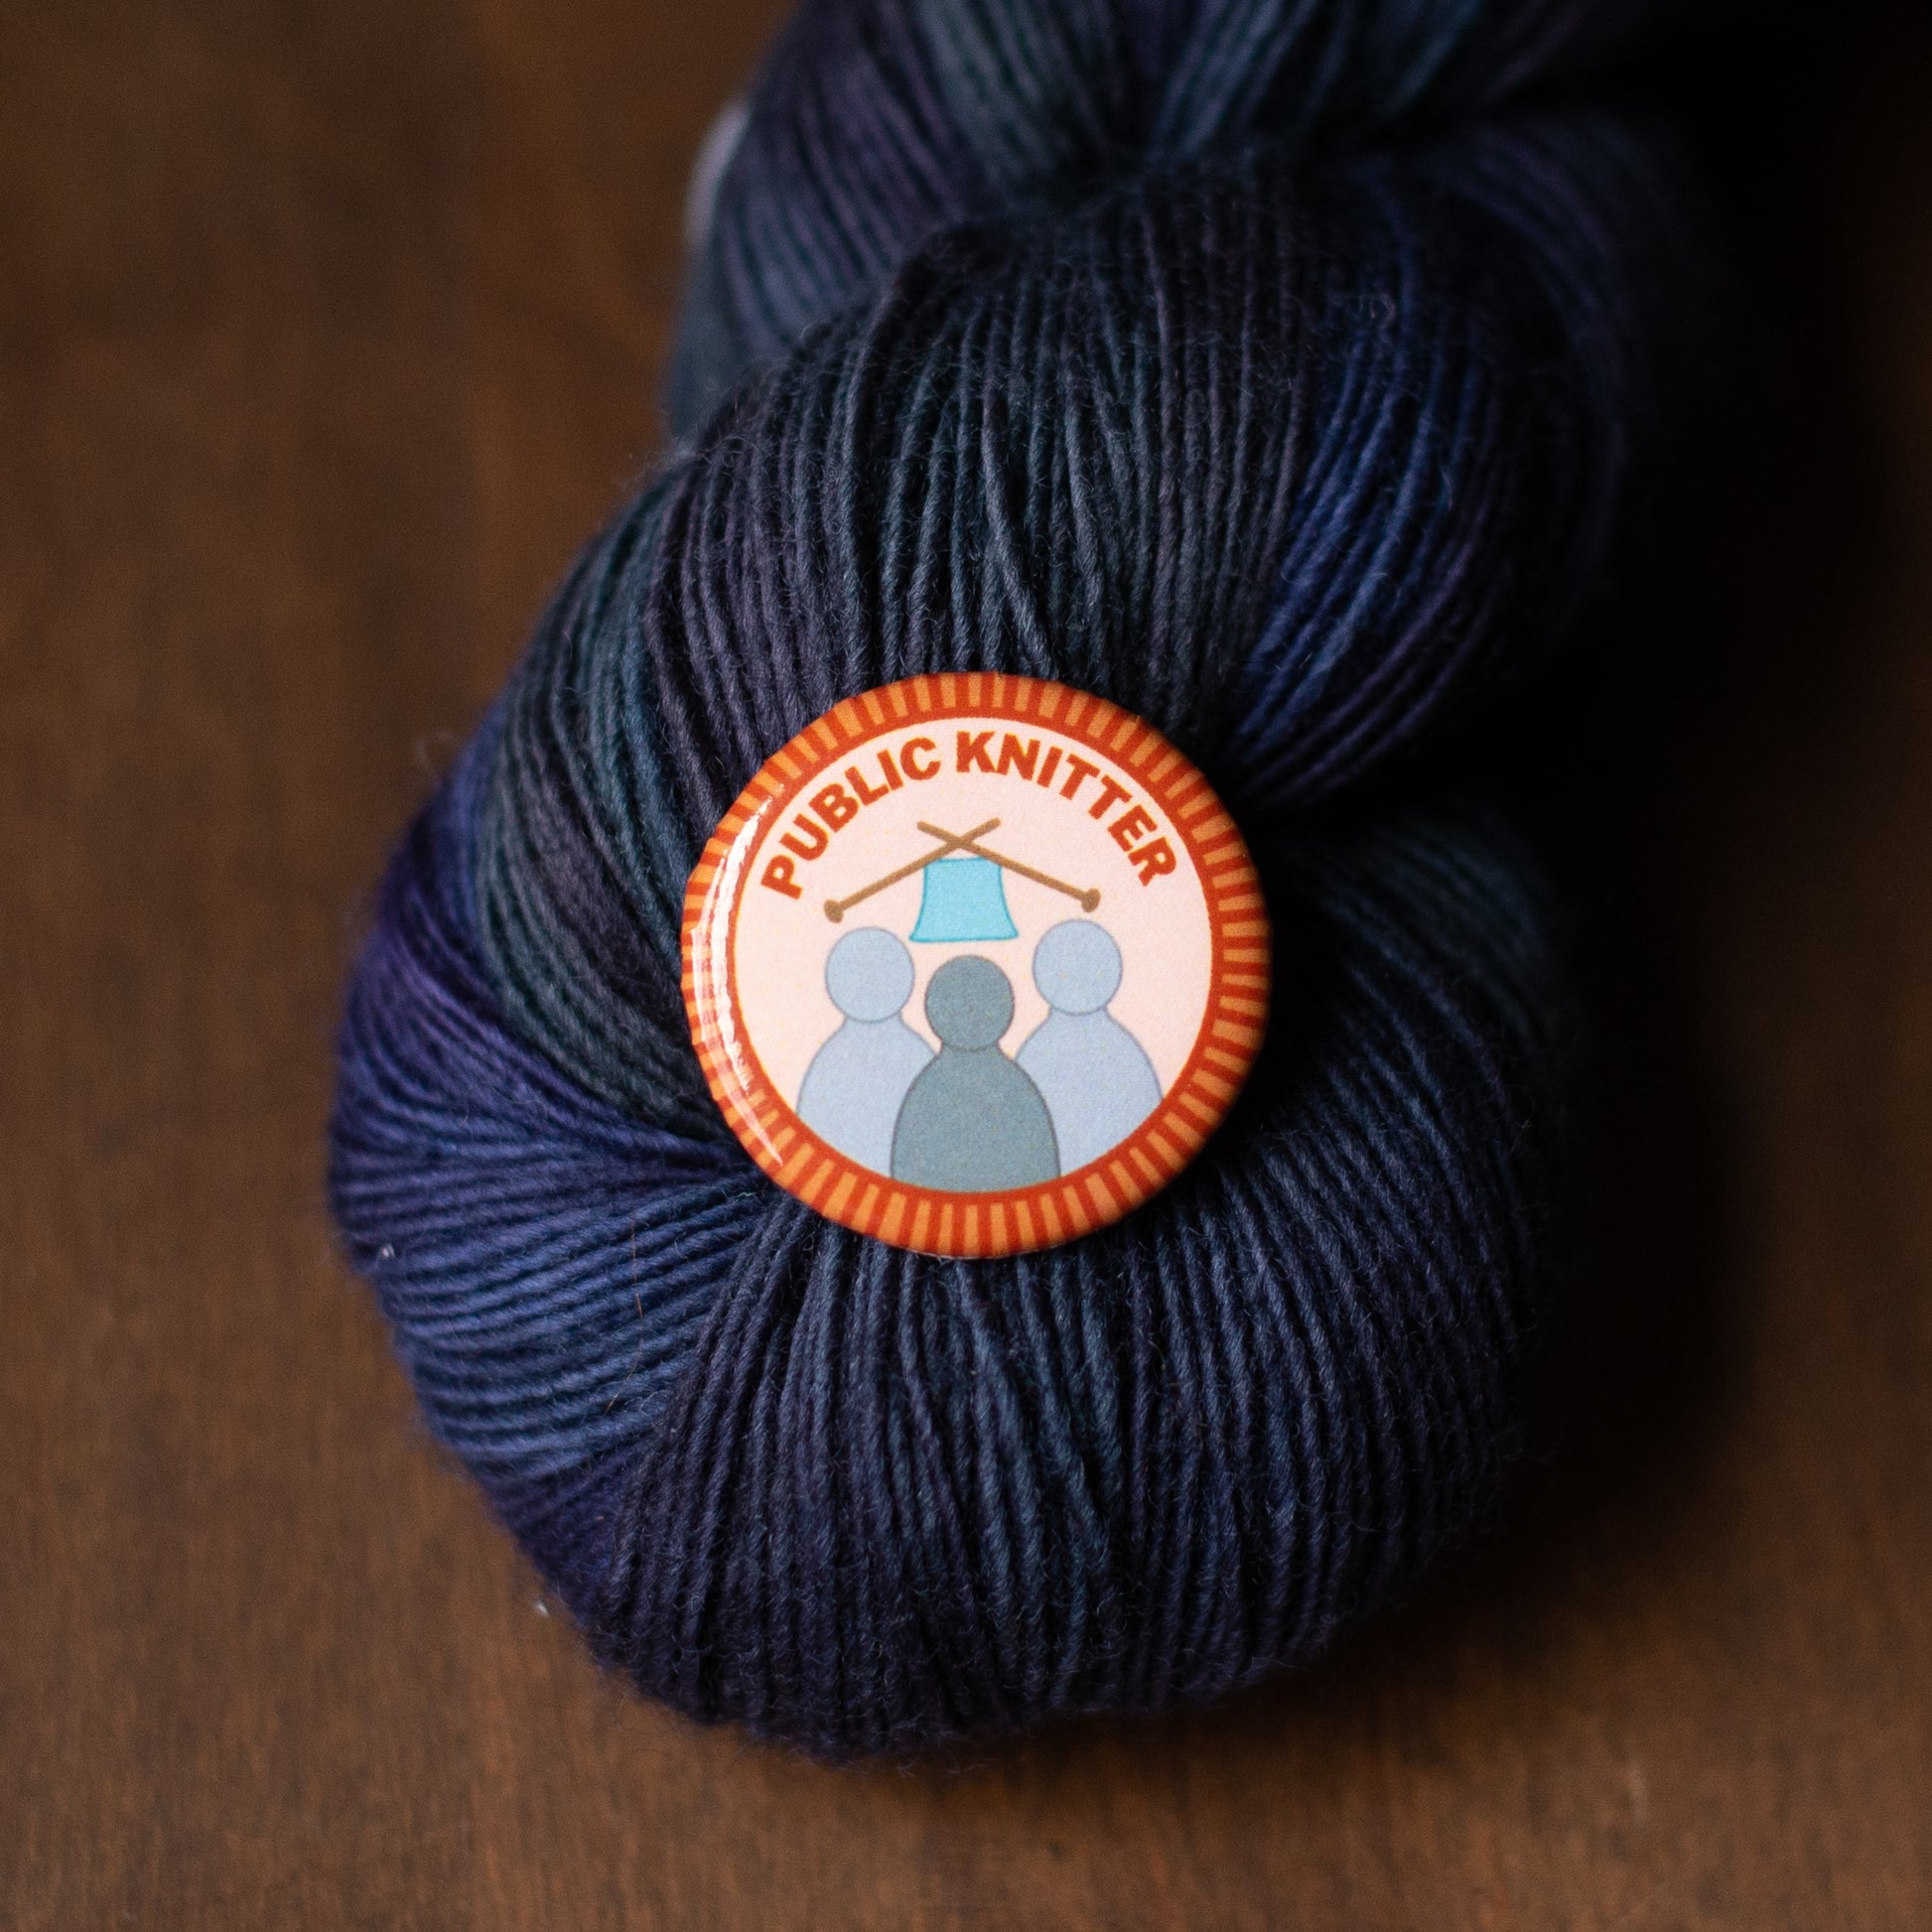 public knitter merit badge